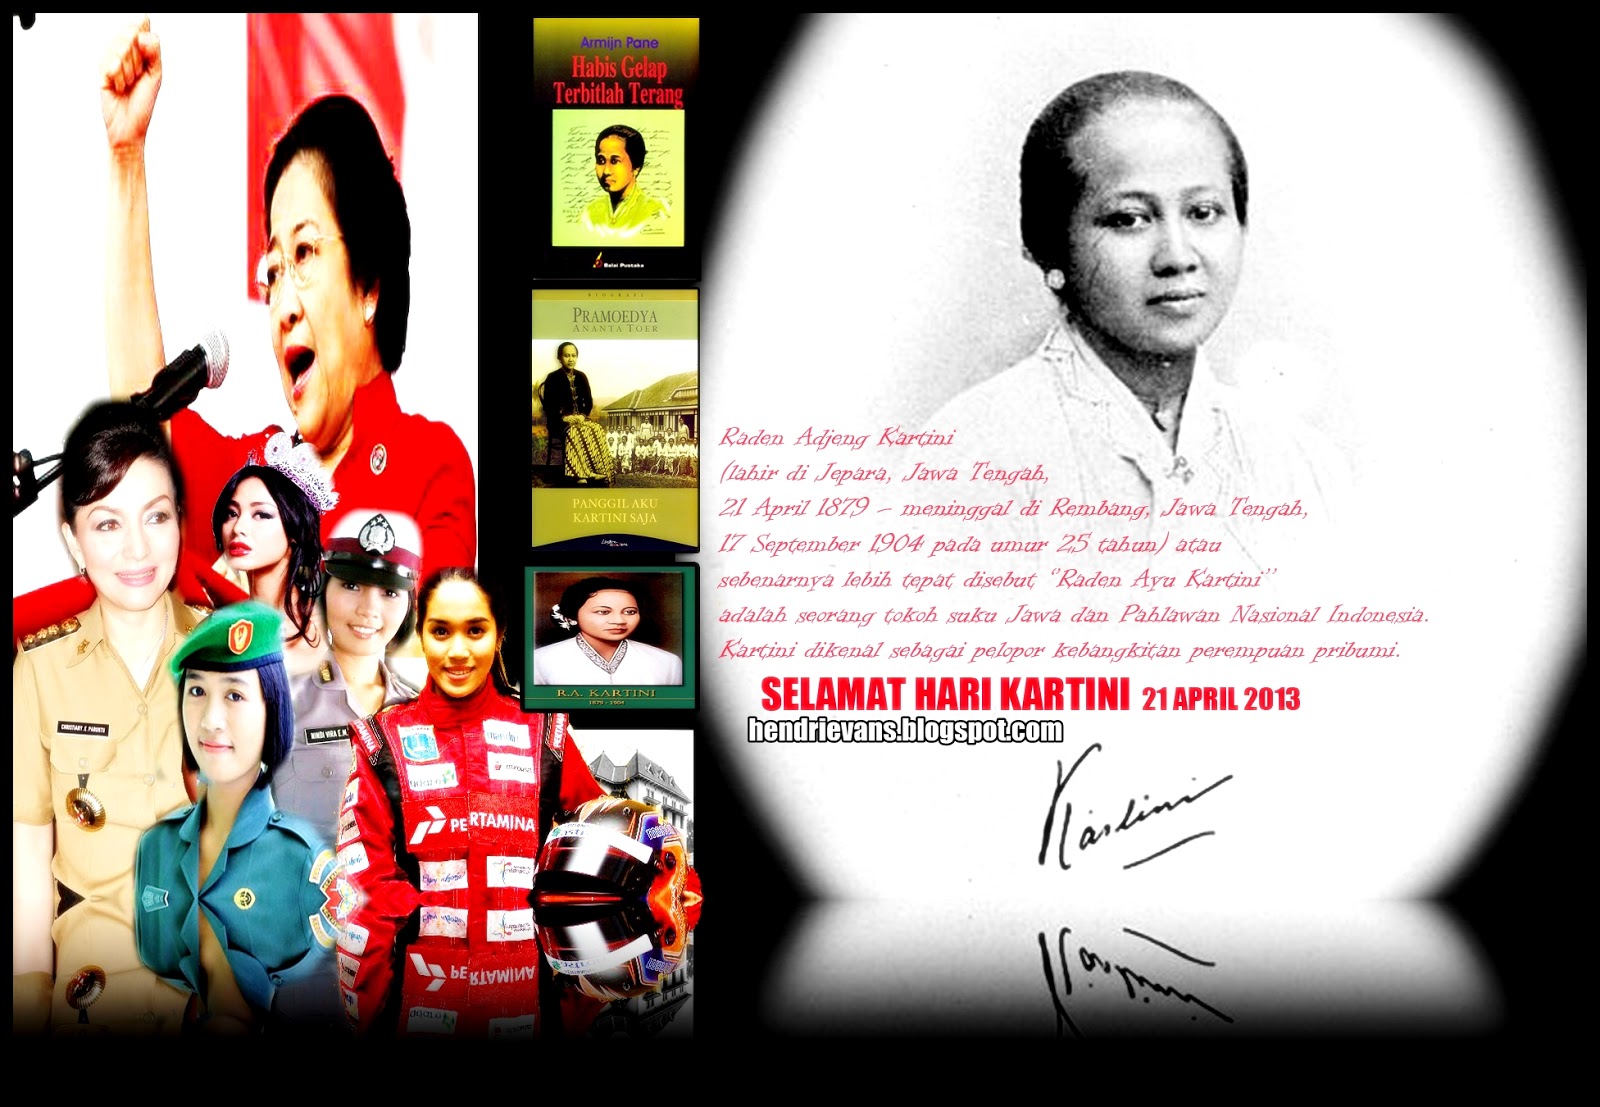 Hendrievans.blogspot.com: Selamat Hari Kartini pada 